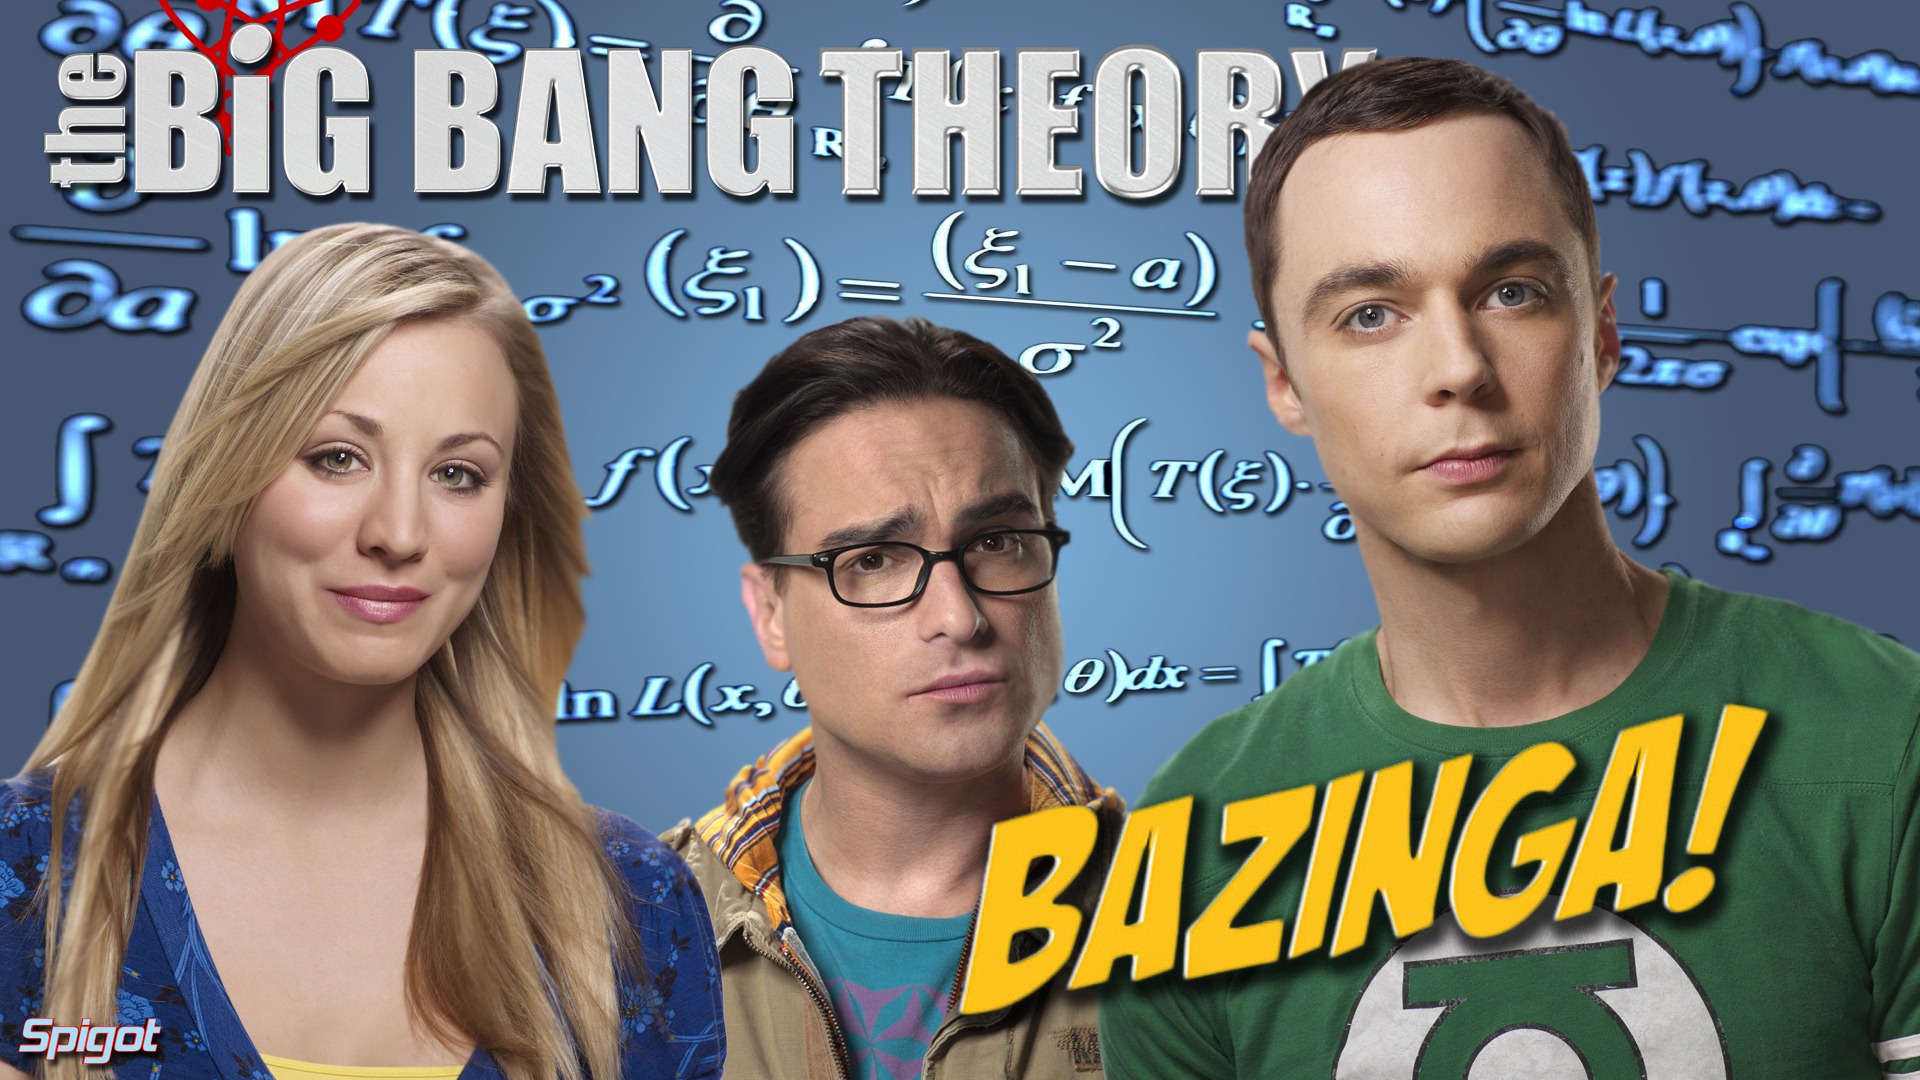 The Big Bang Theory 生活大爆炸 电视剧高清壁纸7 - 1920x1080